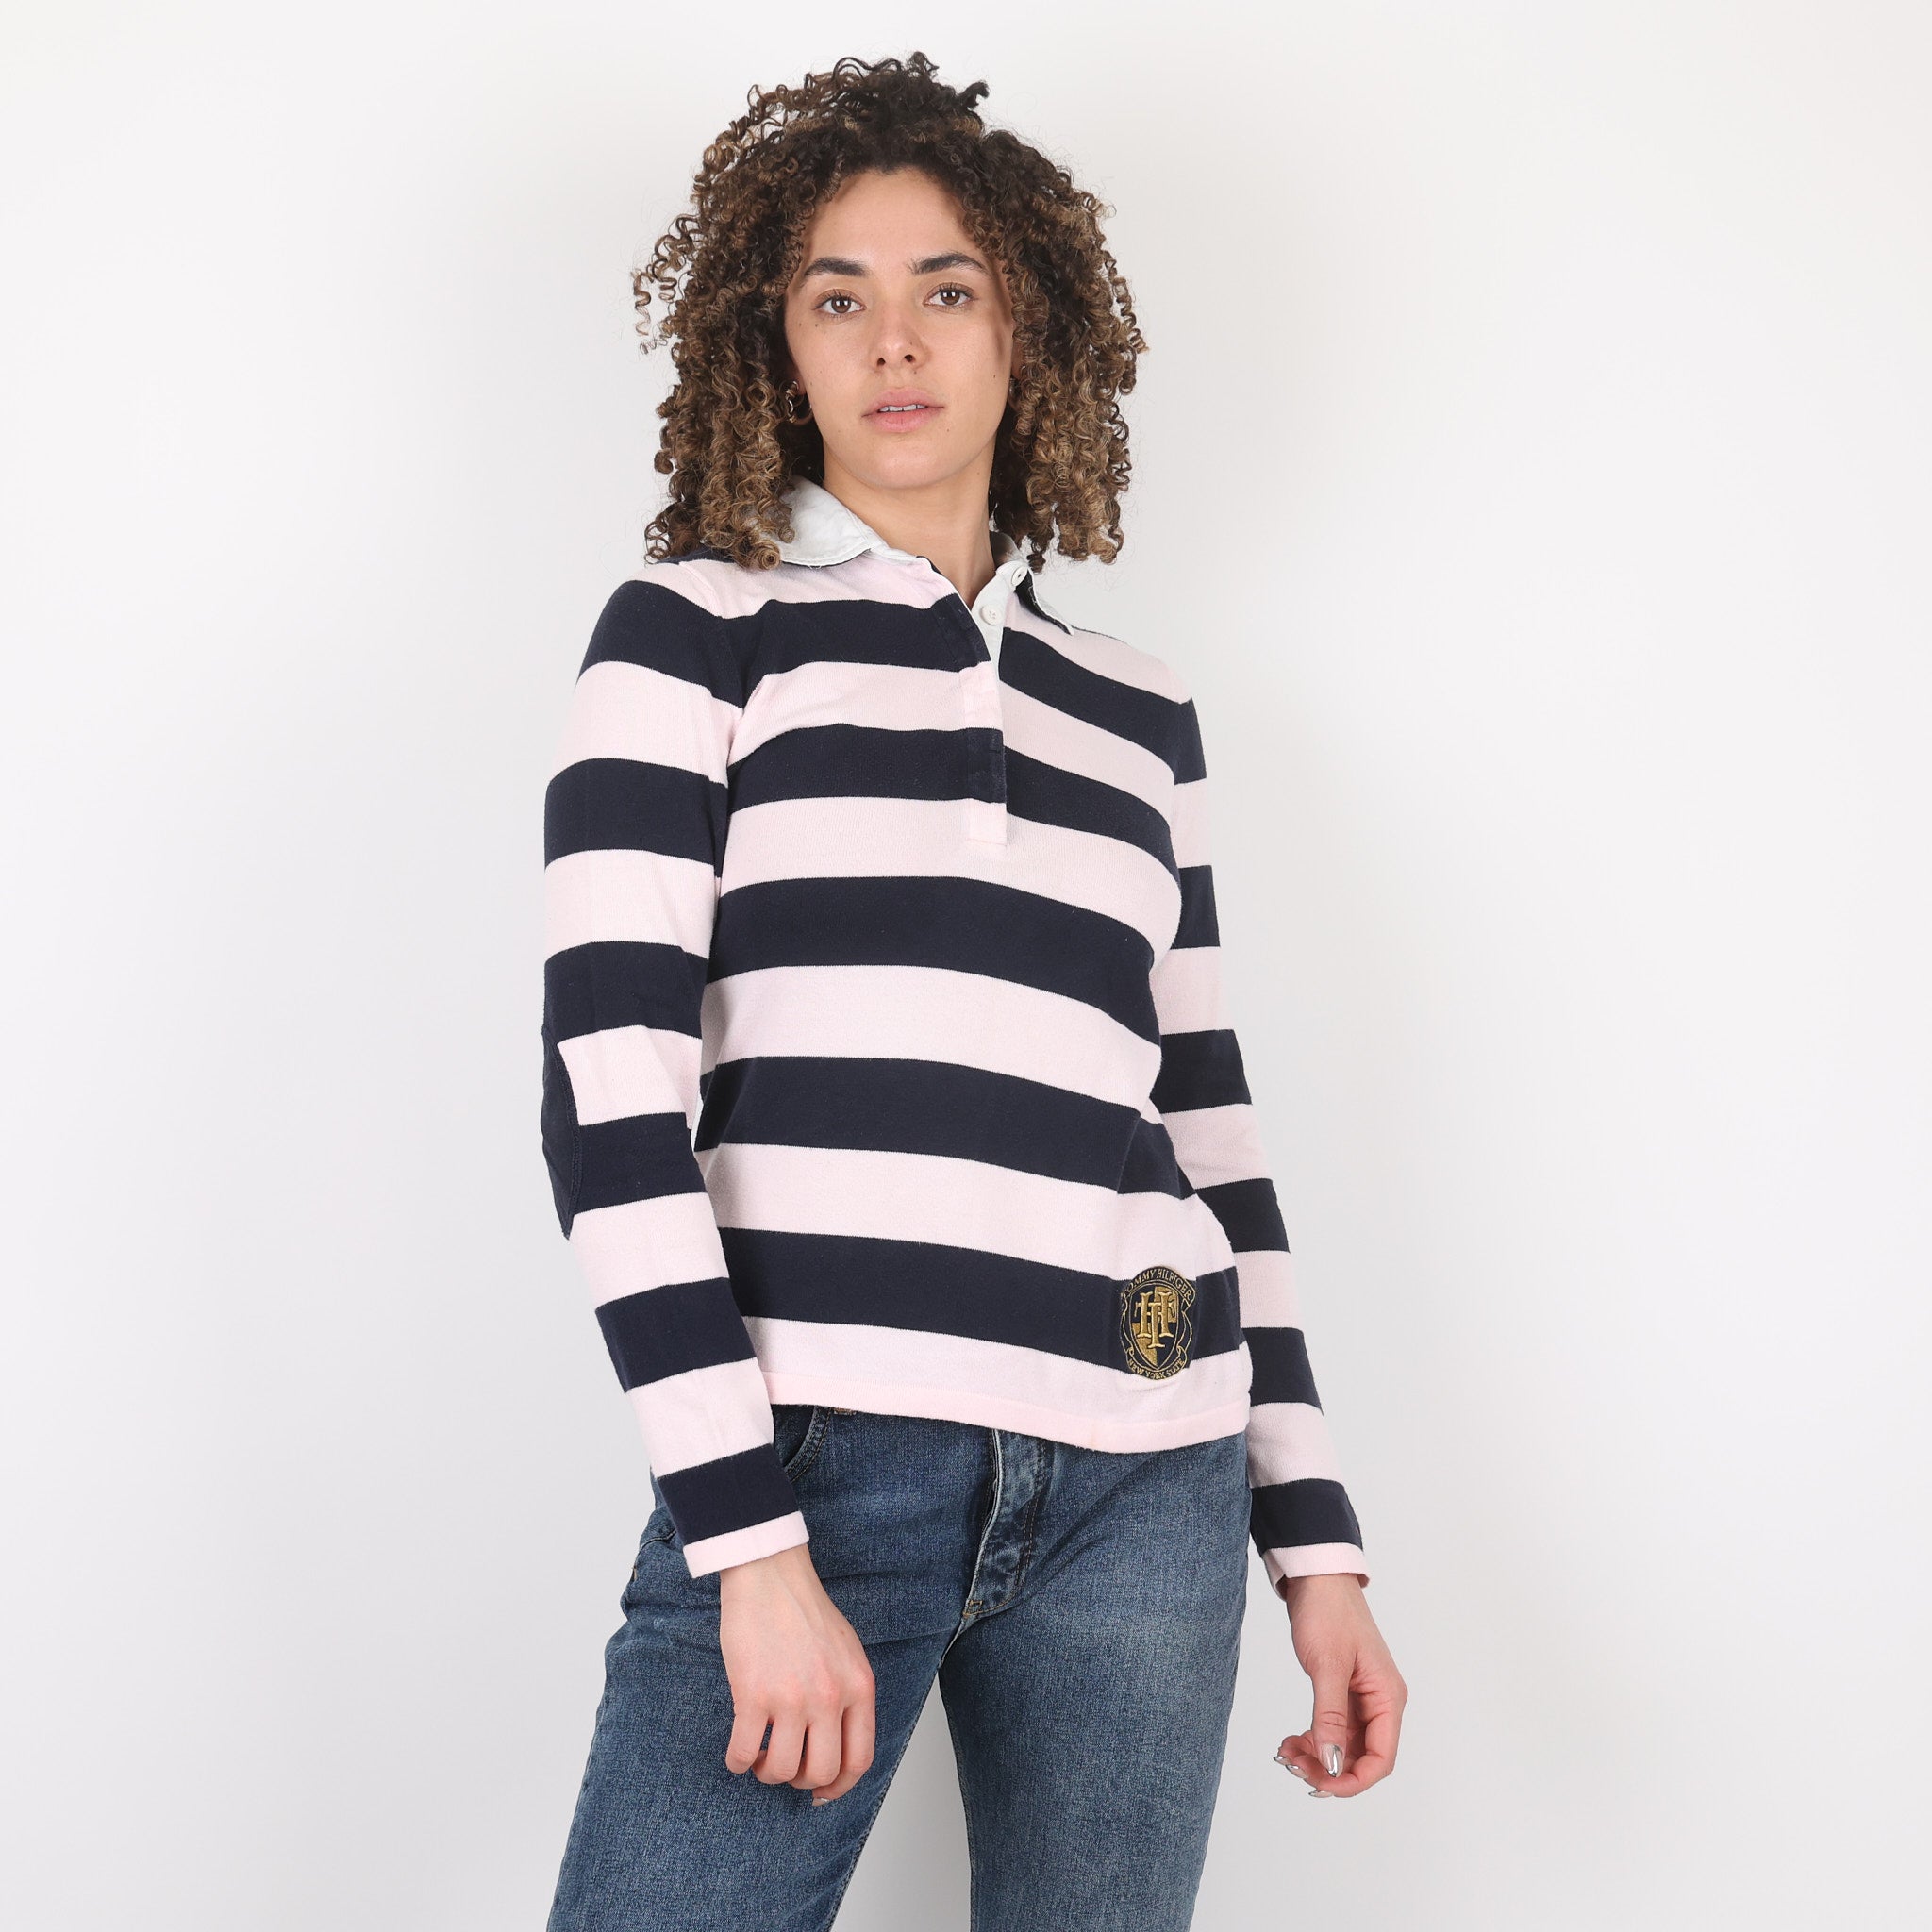 Sweatshirt, UK Size 10